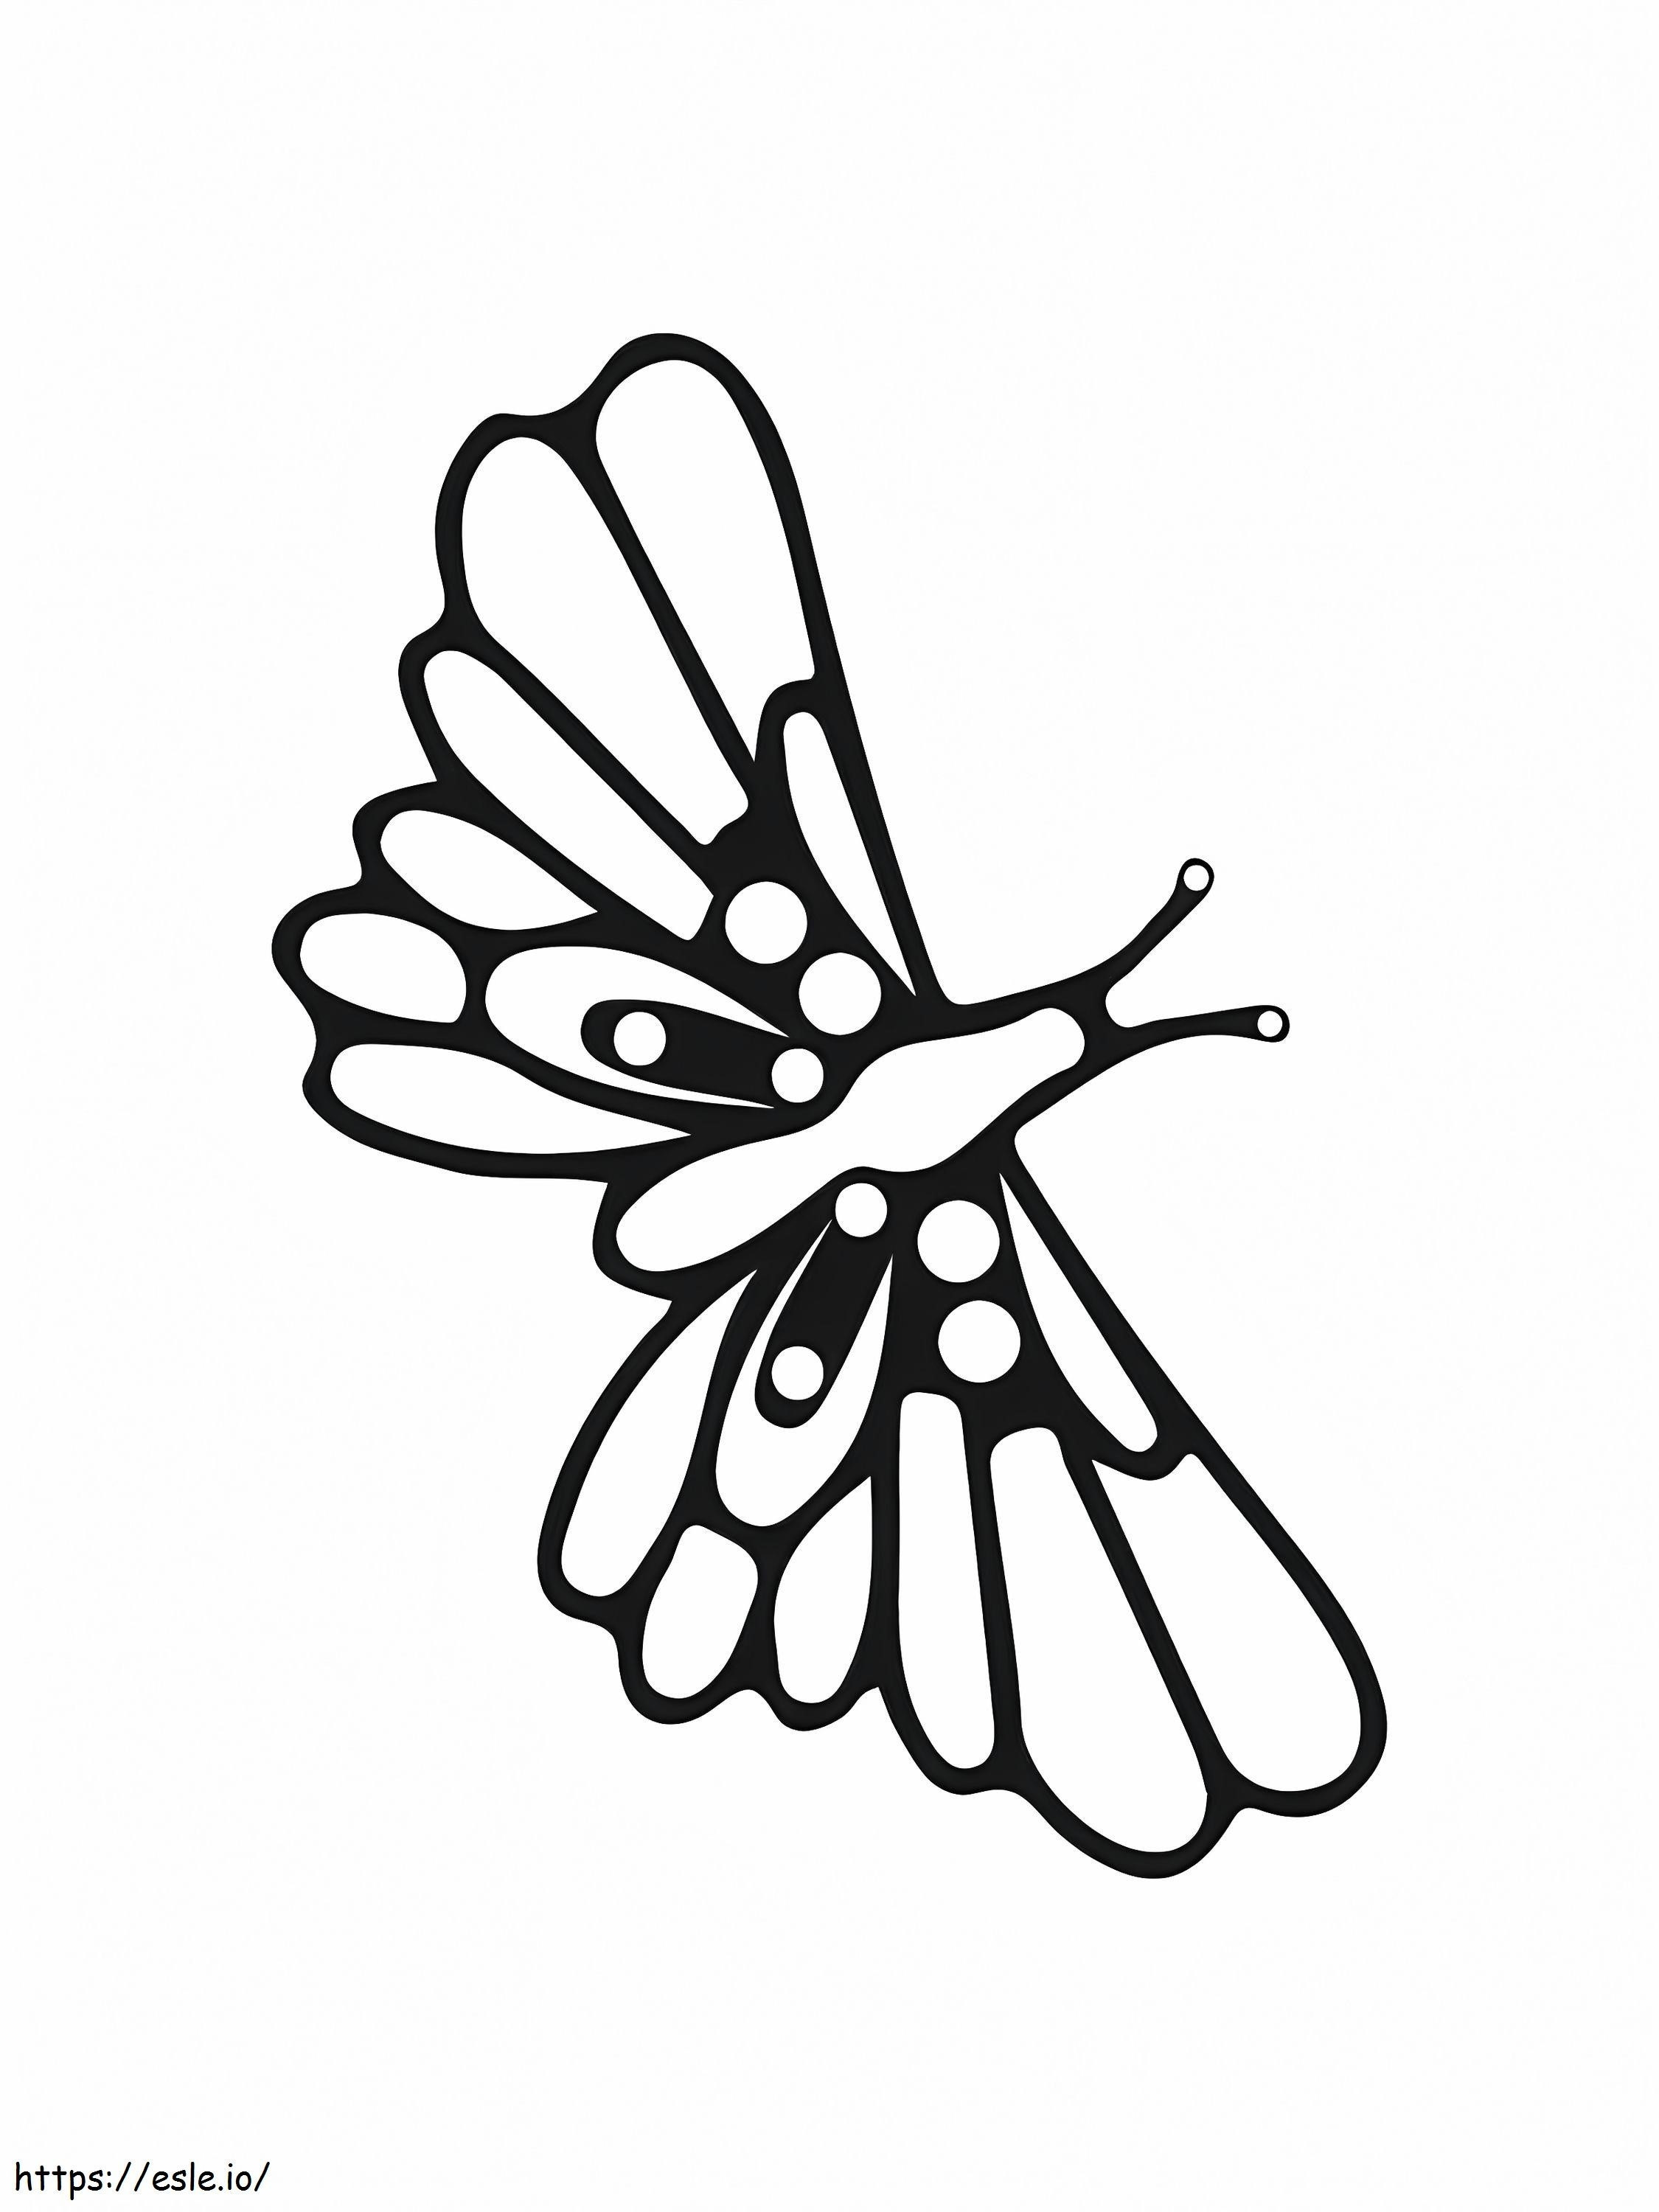 Einfacher fliegender Schmetterling ausmalbilder